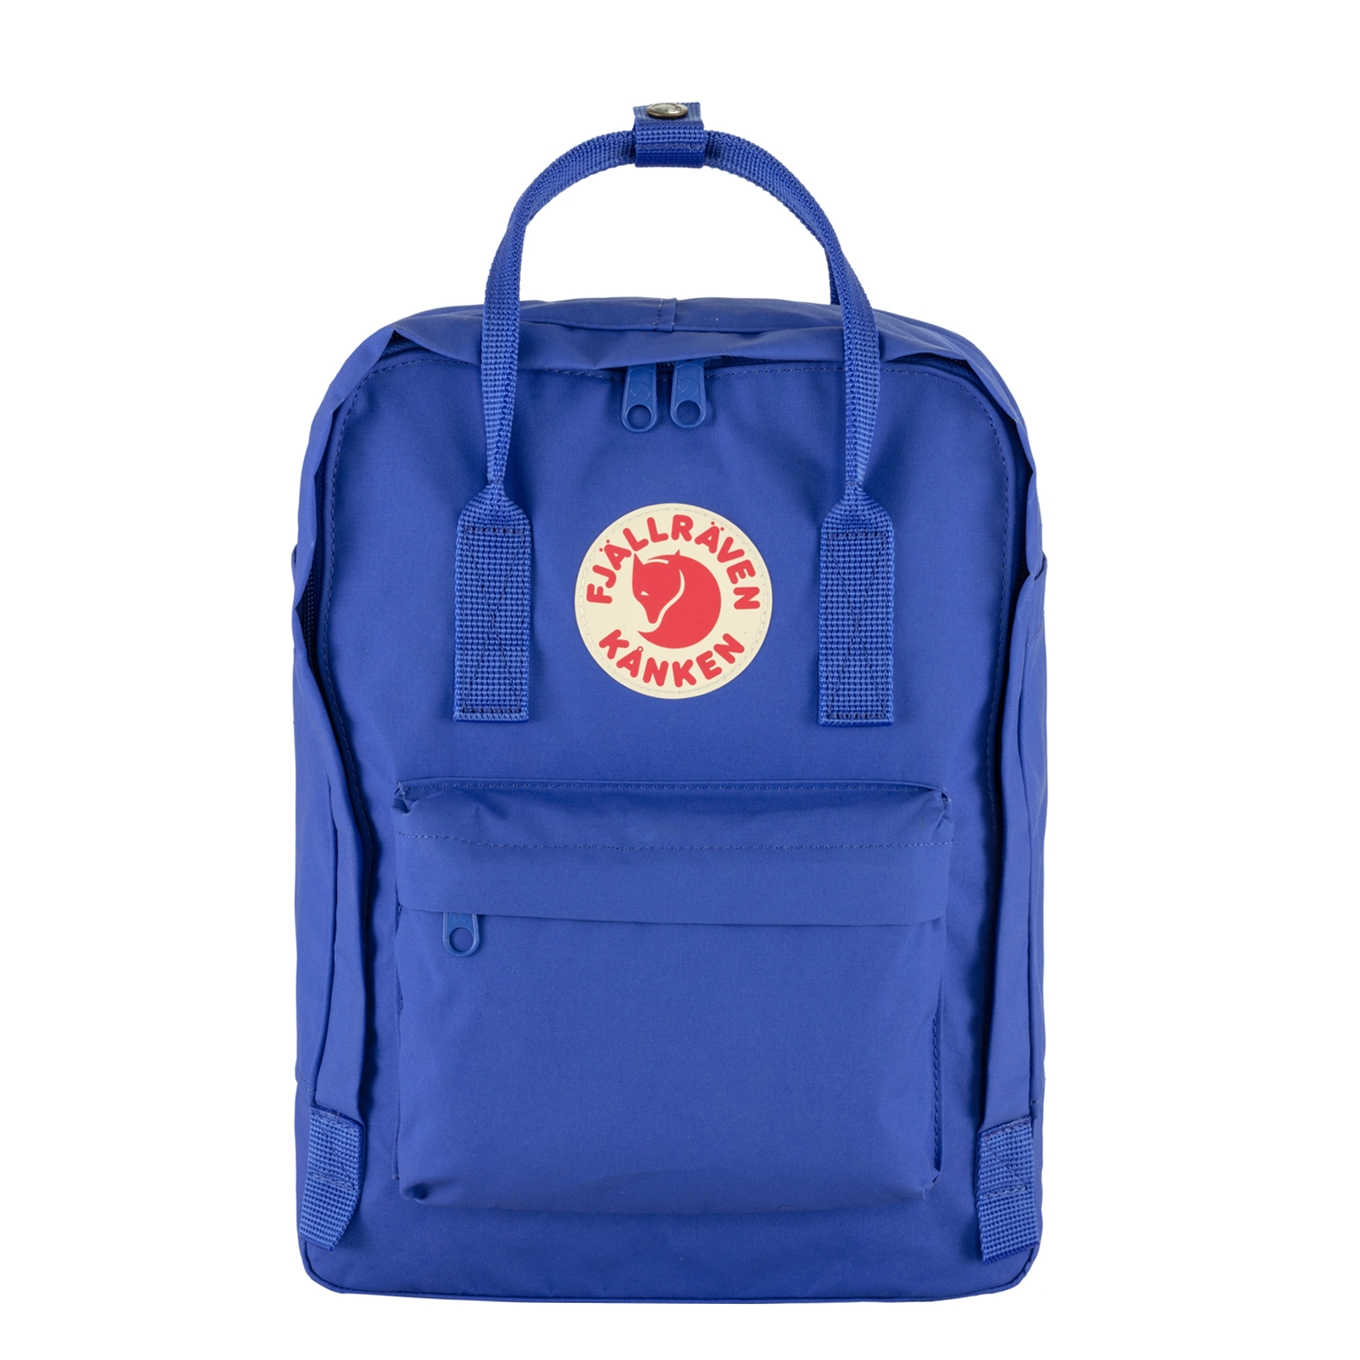 Fjallraven Kanken Laptop 13" cobalt blue backpack